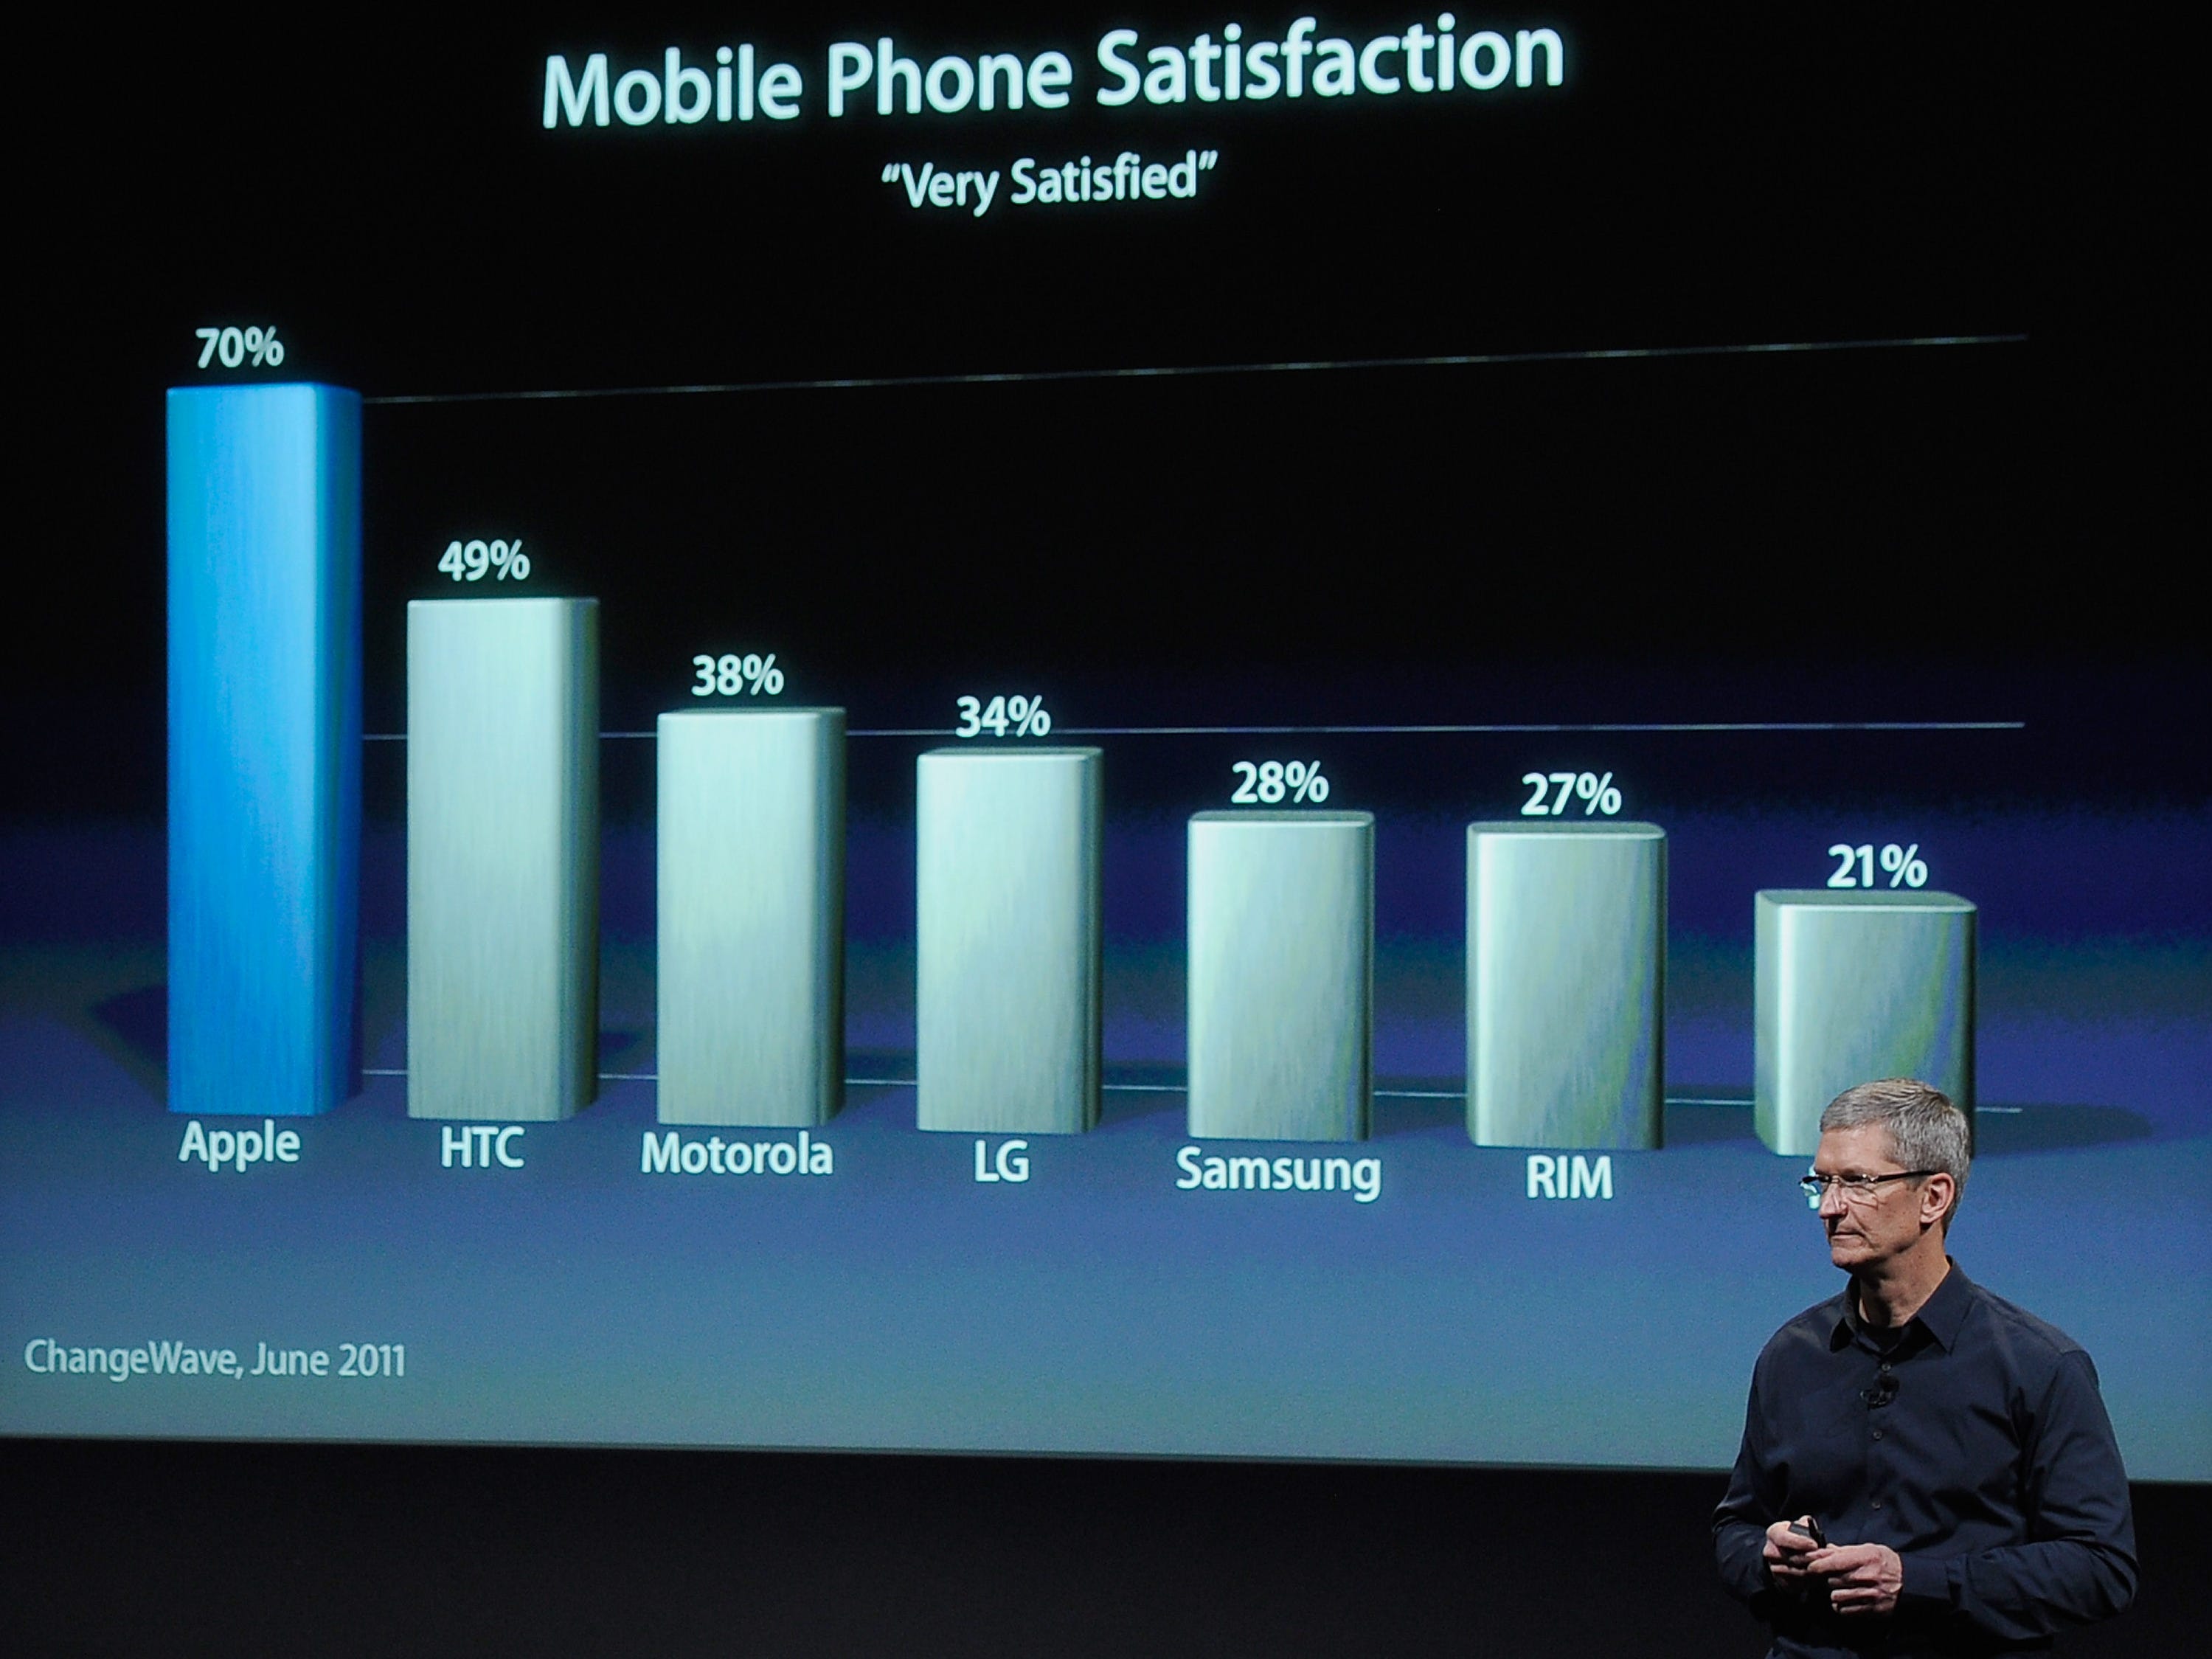 Tim Cook steht vor einem großen Bildschirm und zeigt ein Diagramm zur Zufriedenheit mit Mobiltelefonen.